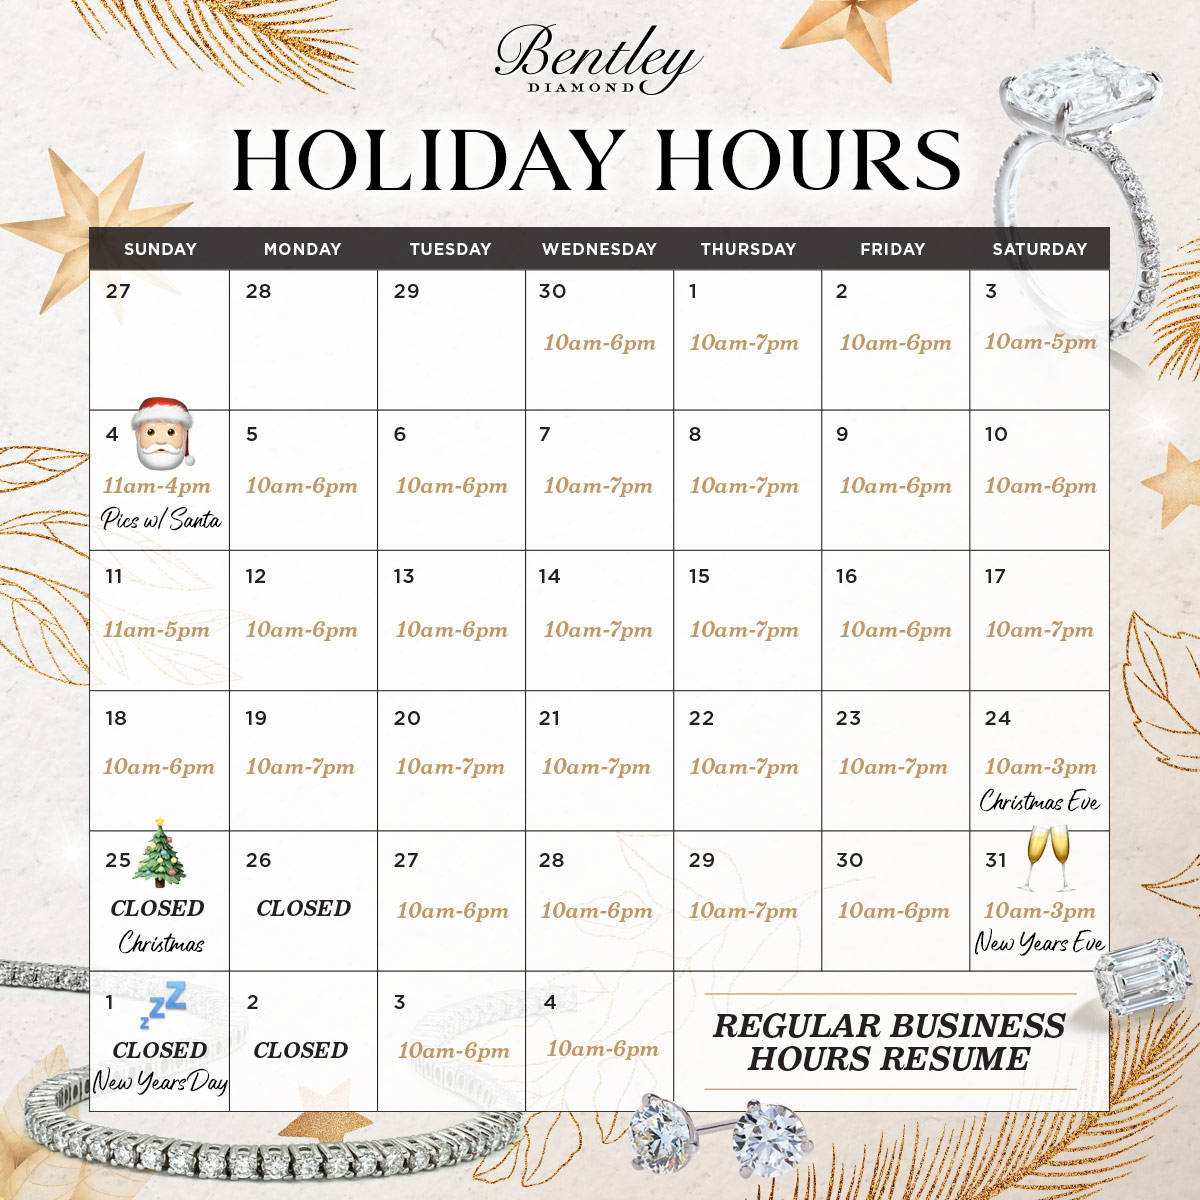 Bentley Diamond - Holiday Hours 2017